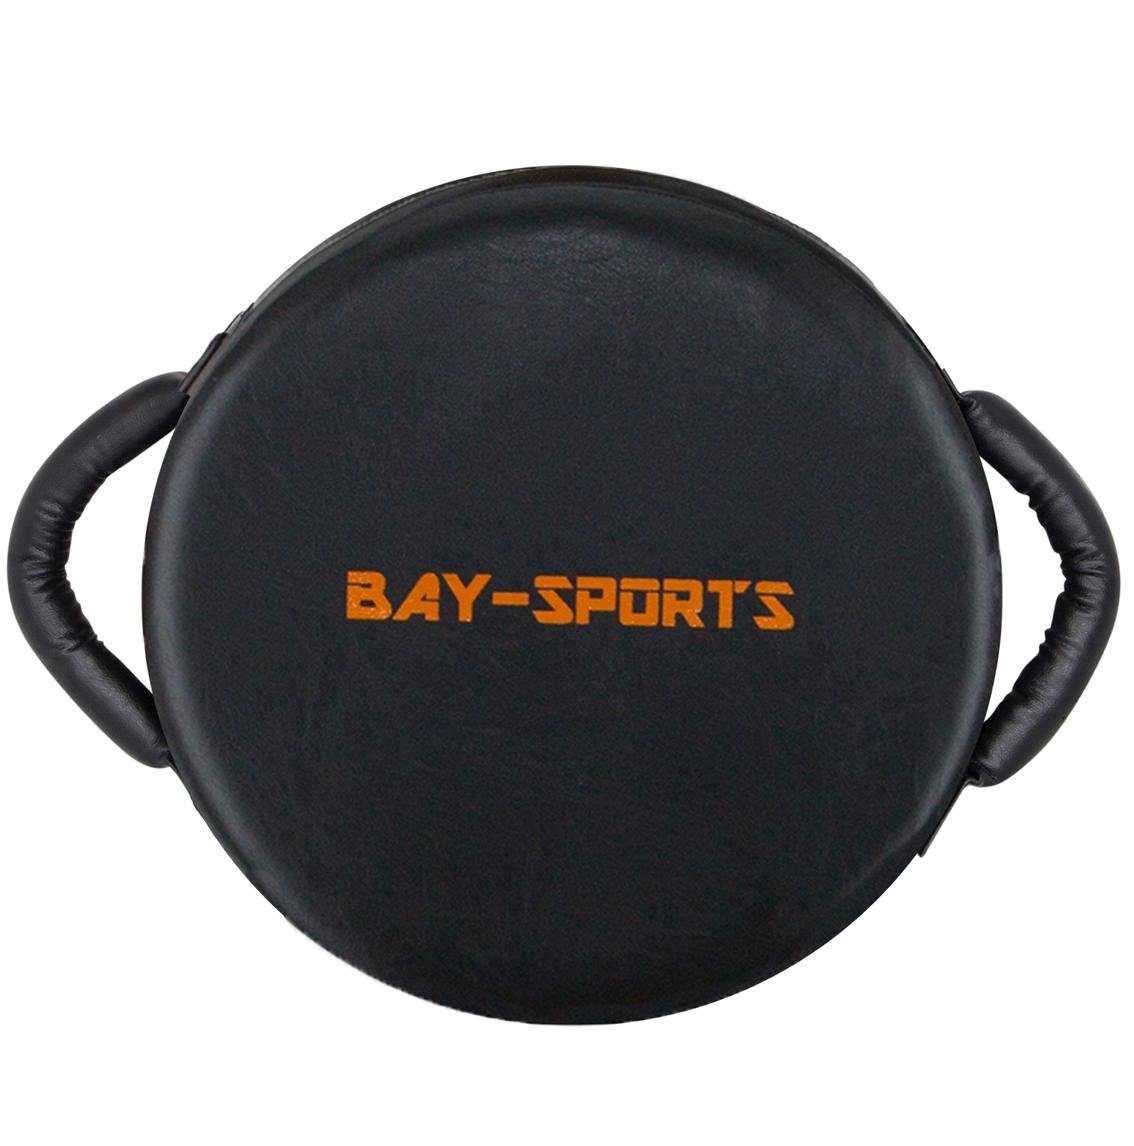 BAY-Sports Pratzen UFO Schlagpolster Rund mit Griffen schwarz/orange, Schlagkissen 34 x 13 cm, Kickboxen, Karate, MMA, Krav Maga | Sport